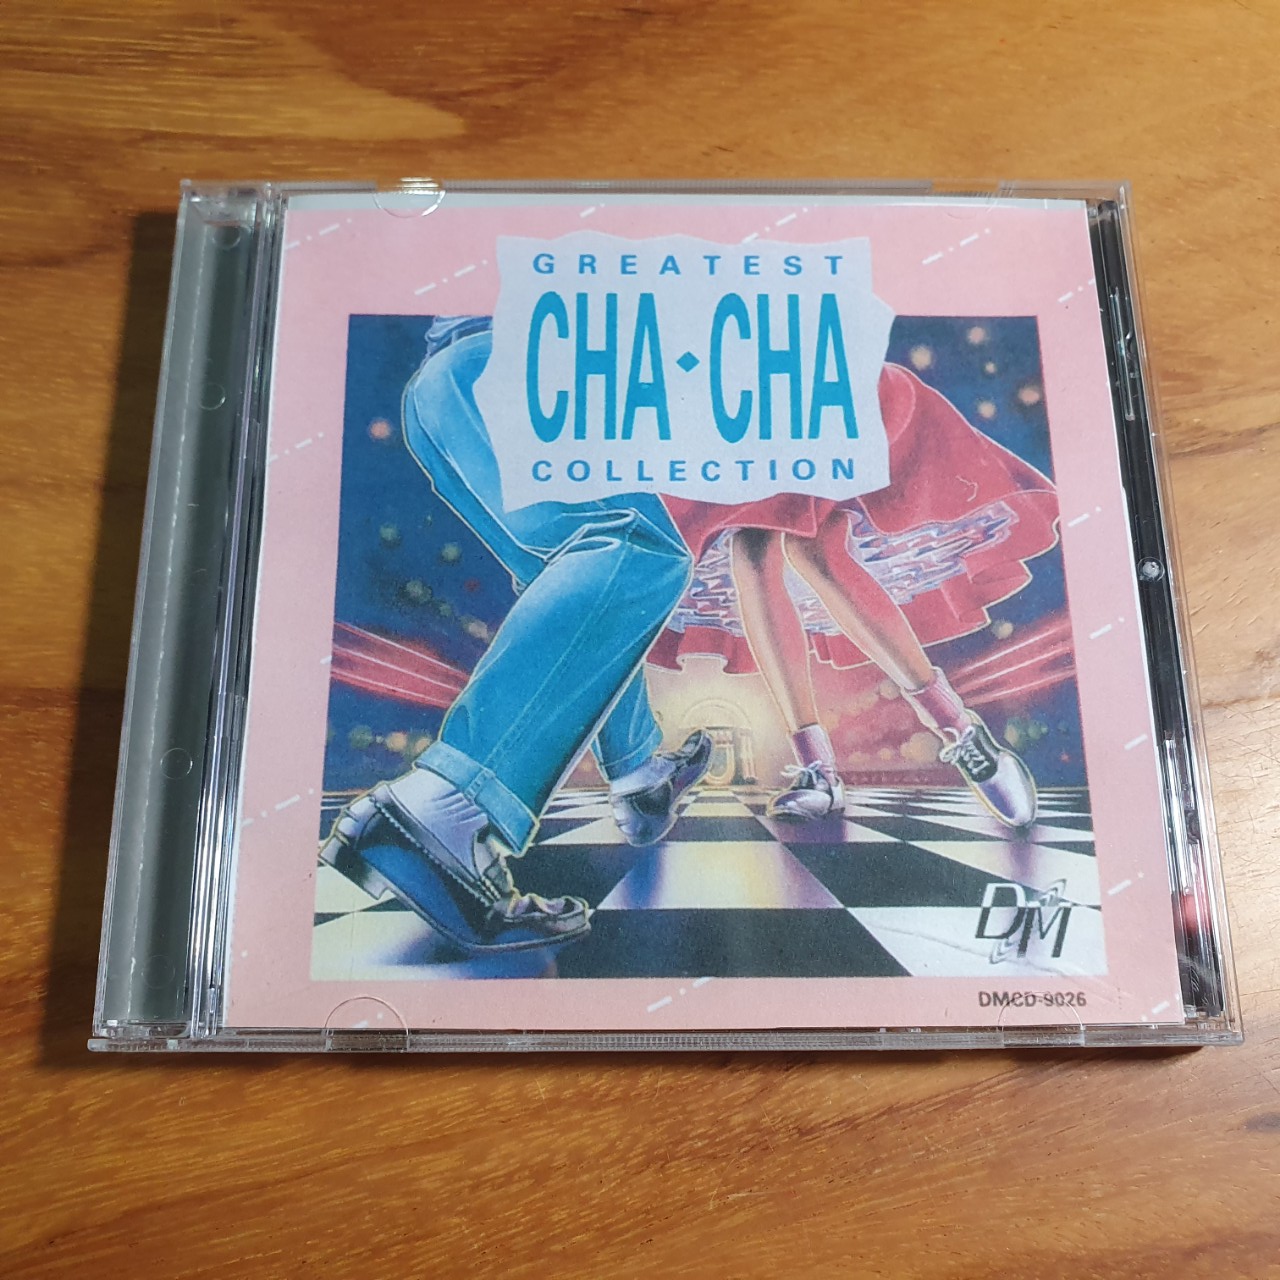 [MDCD] Bộ 3 đĩa CD hòa tấu Chachacha Rumba